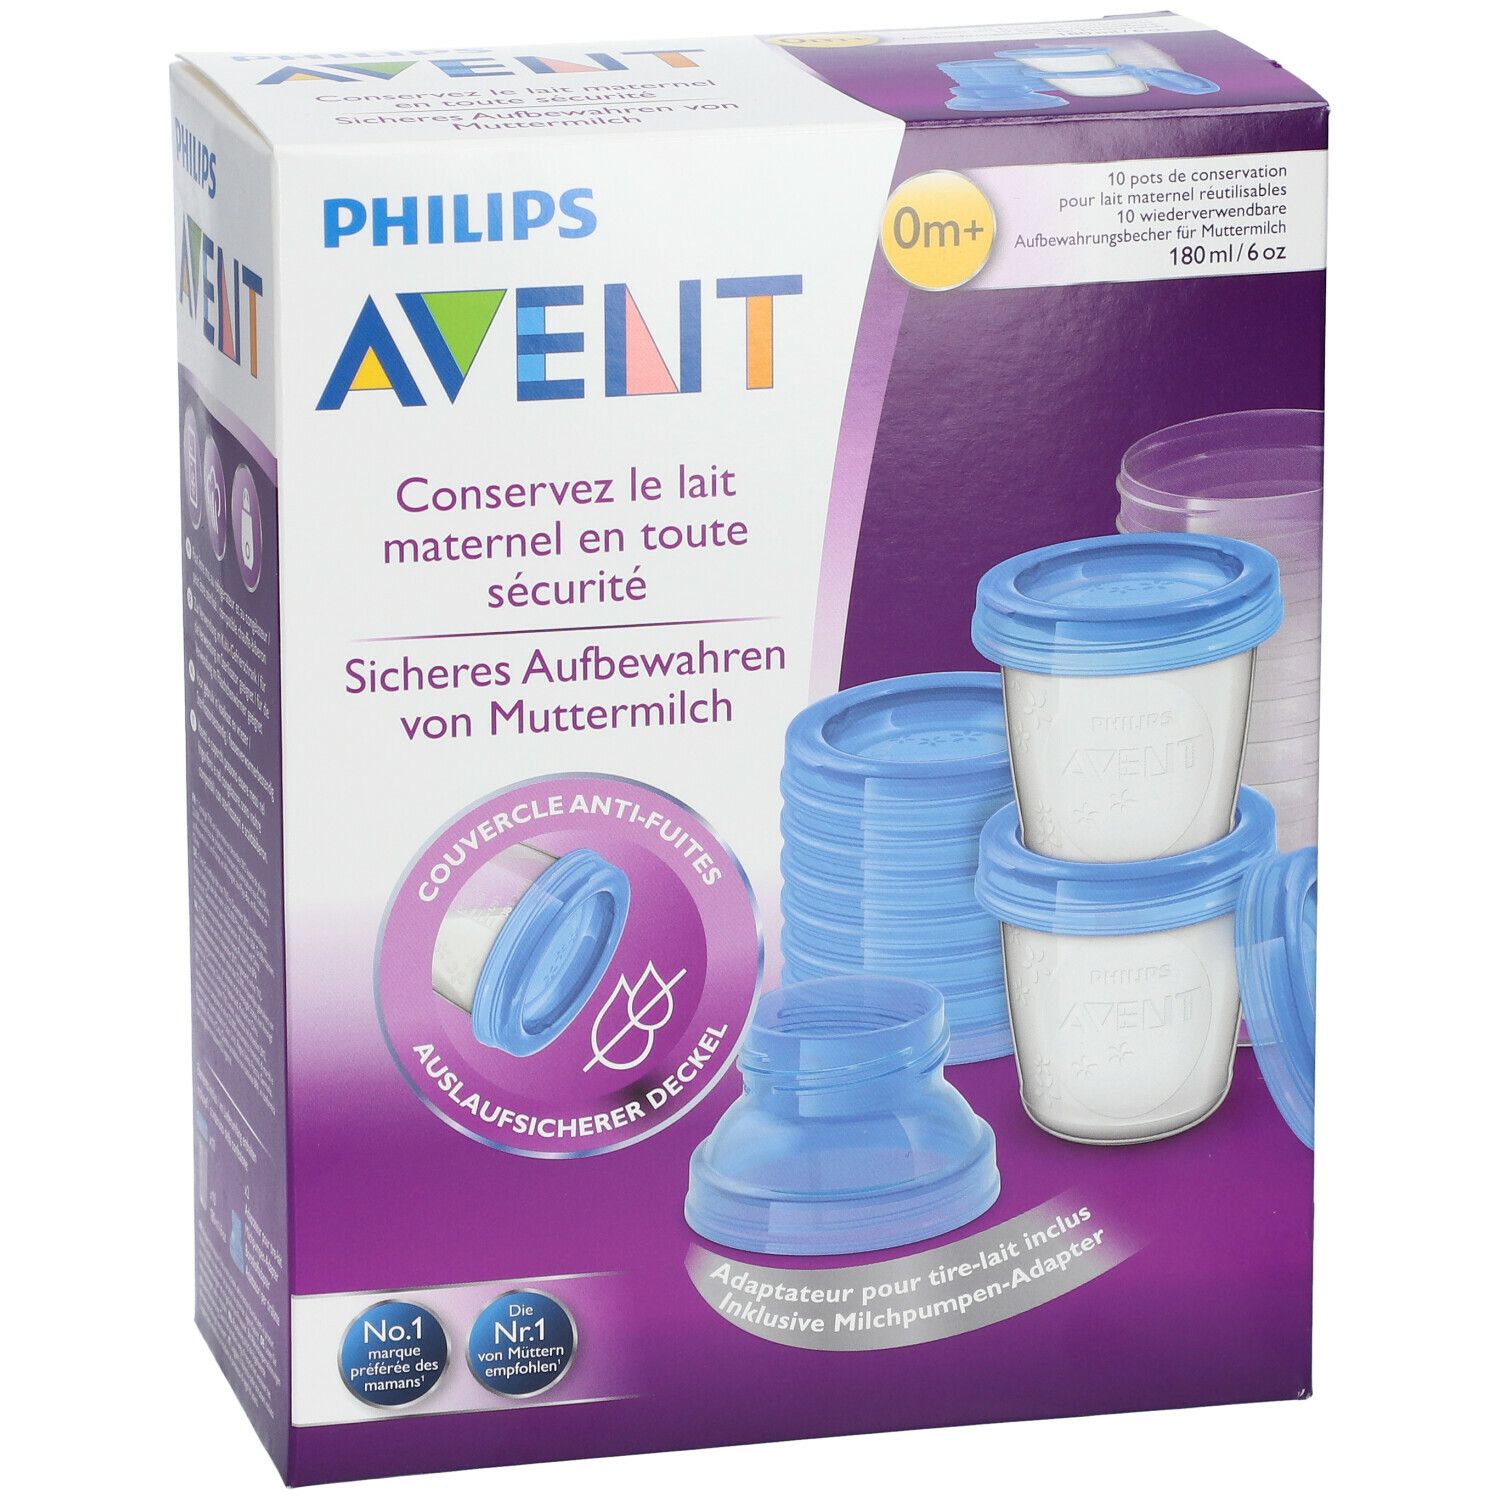 10 pots de conservation pour lait maternel réutilisable - Philips